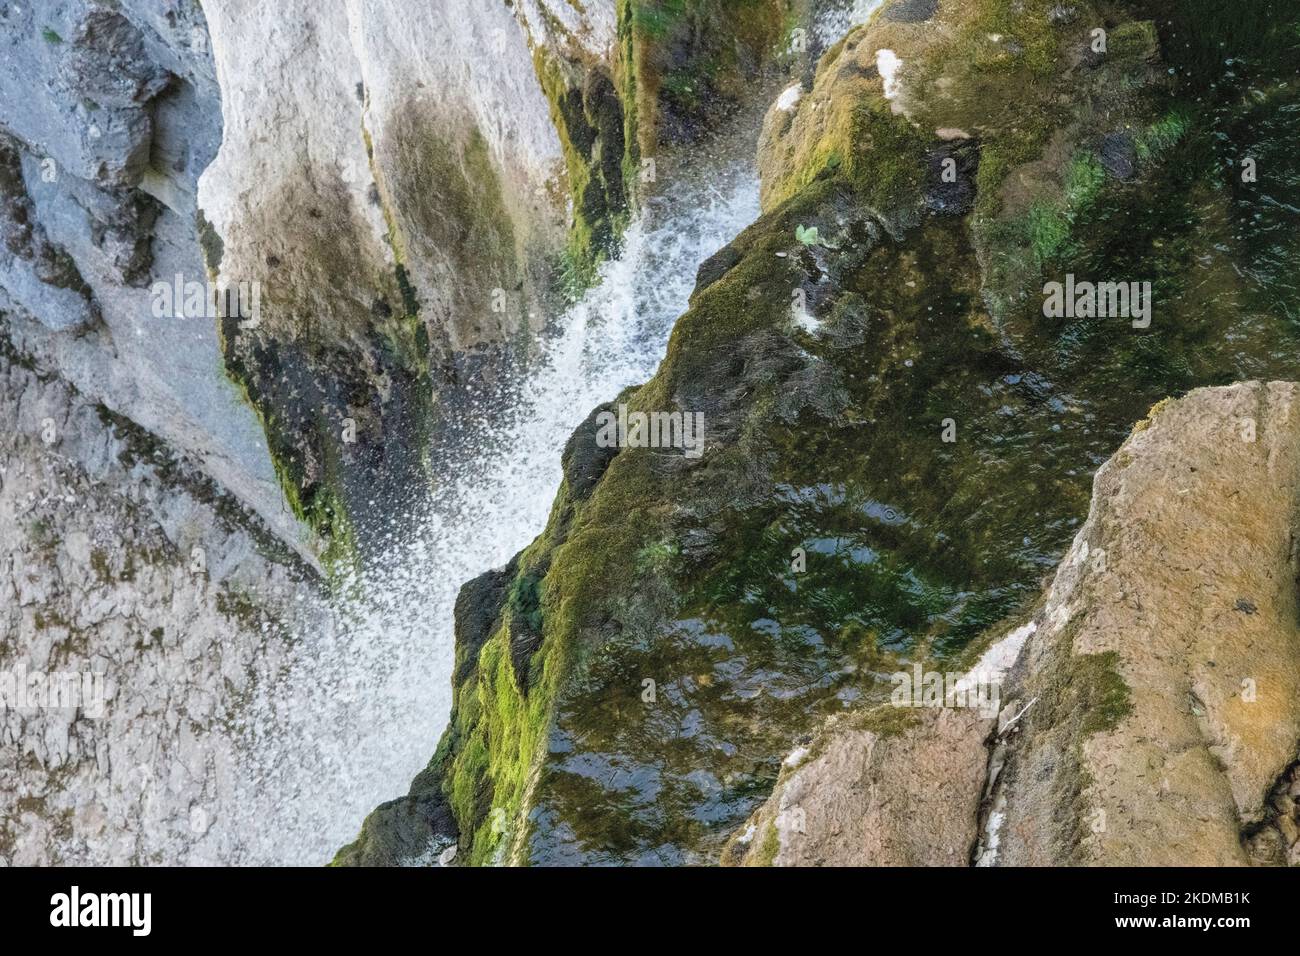 Wasserfall von oben gesehen Stockfoto